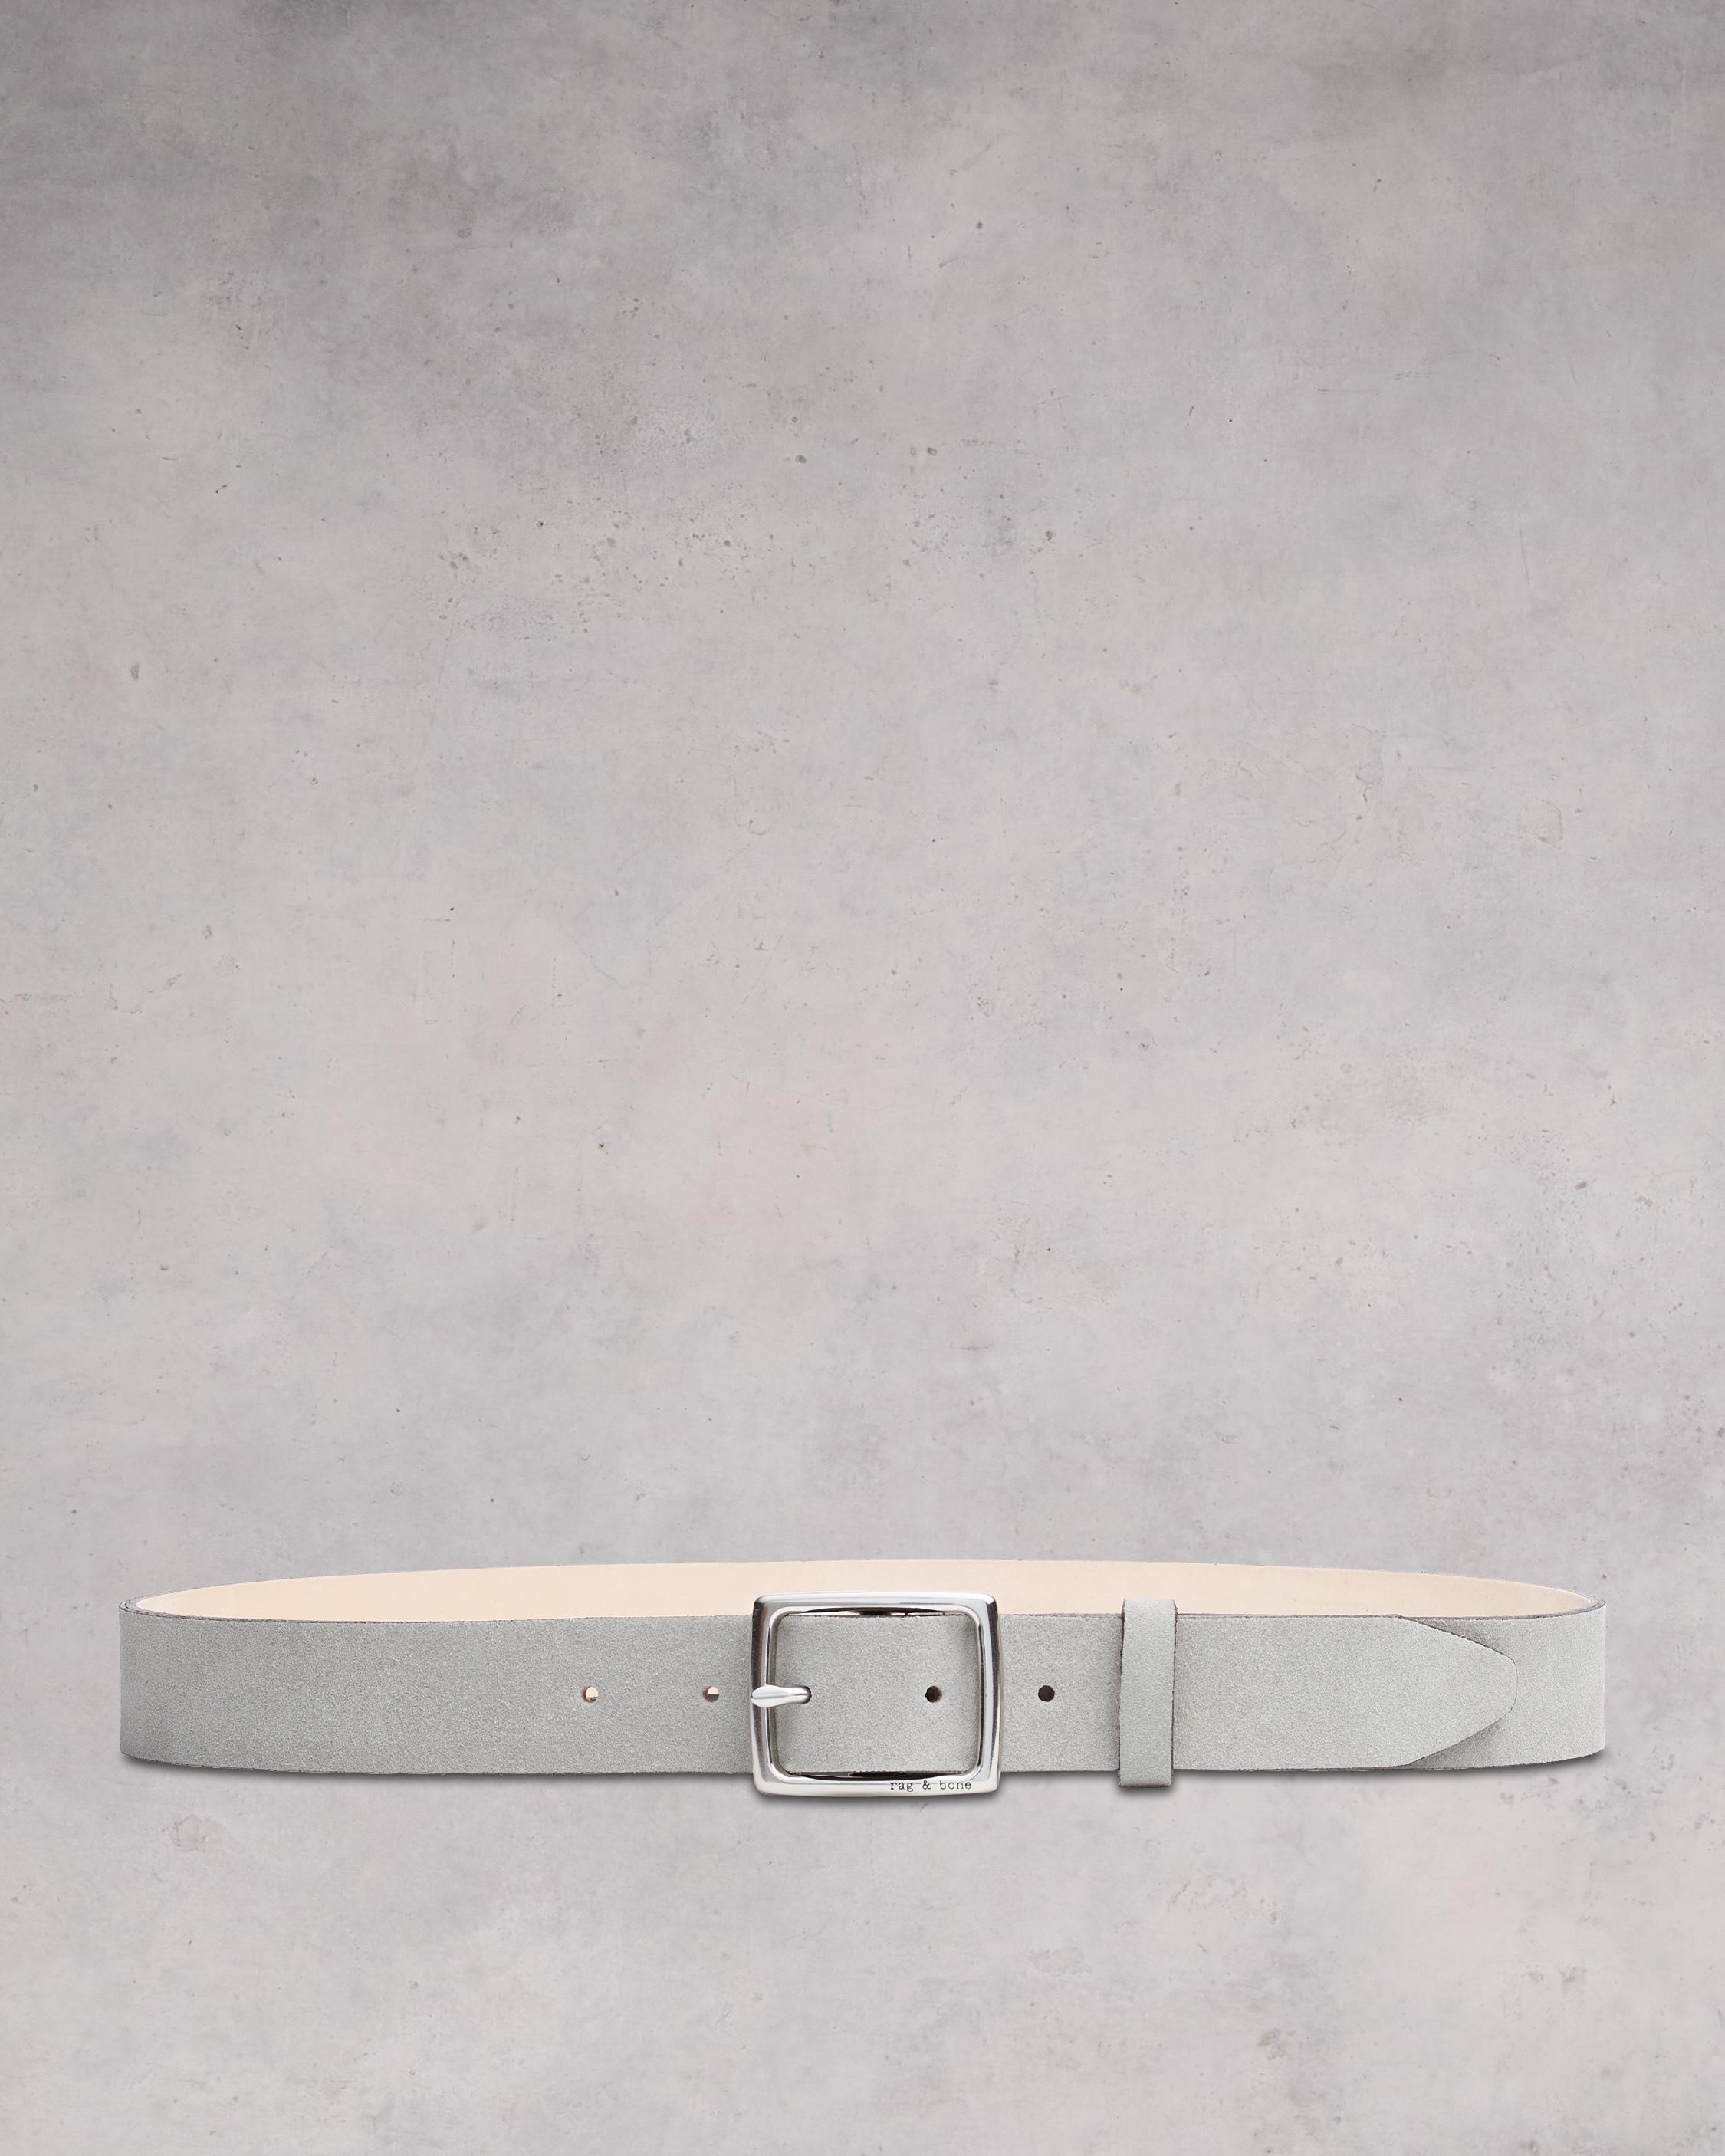 Boyfriend Belt
Leather Belt - 1